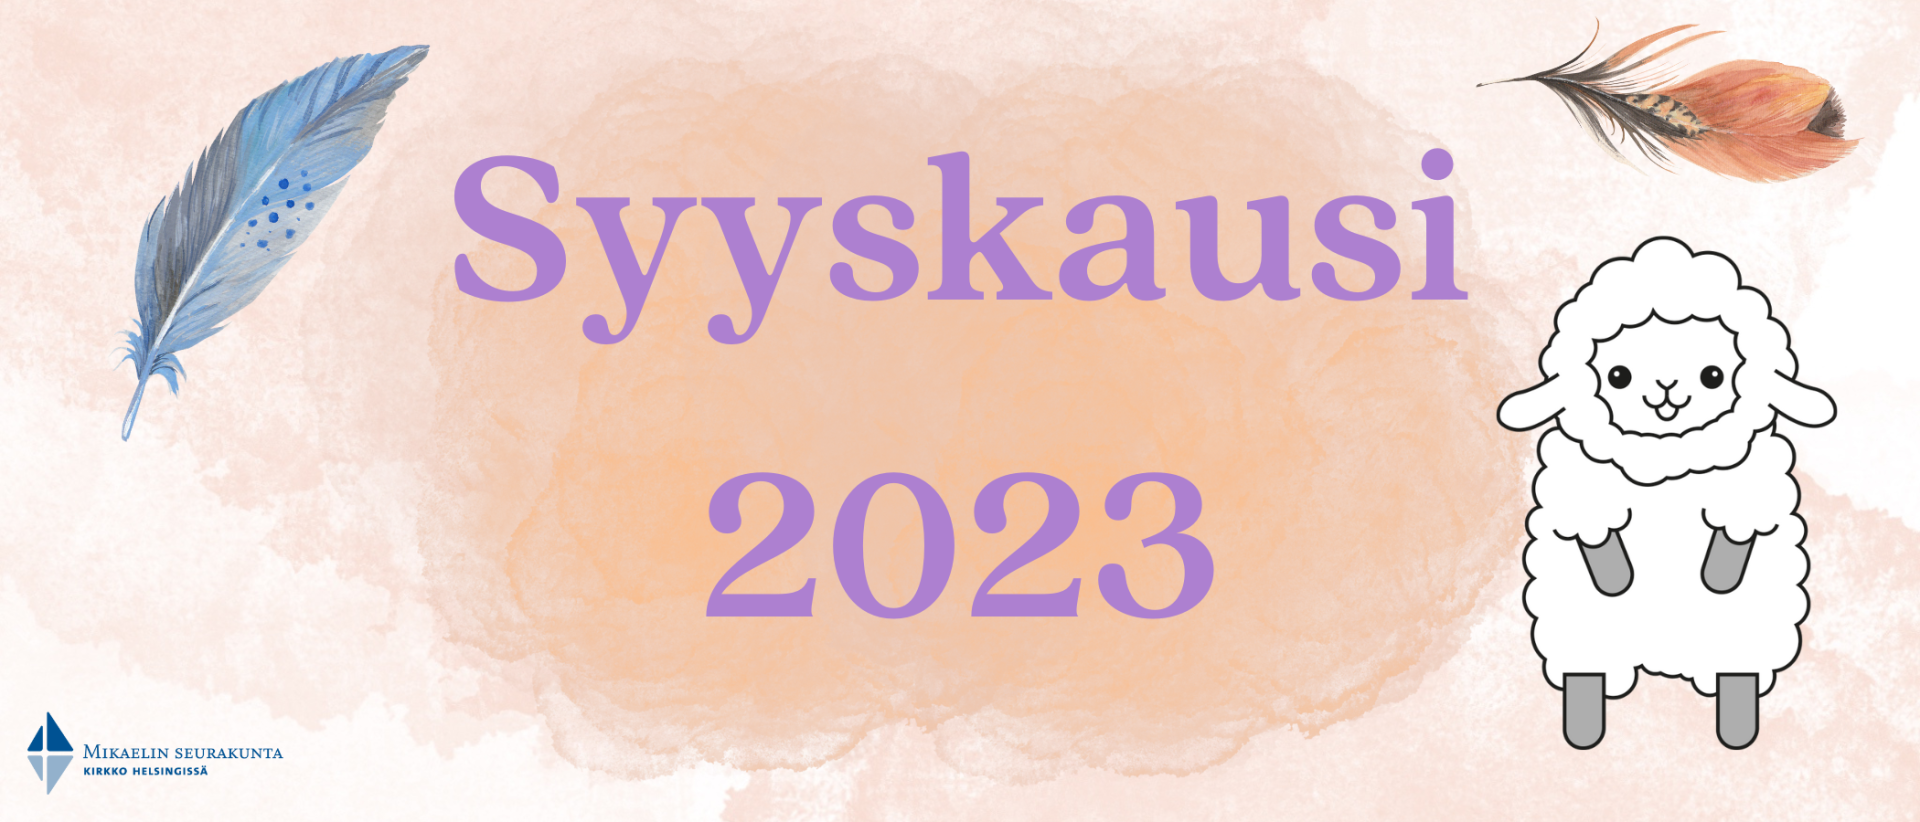 Persikan värisellä taustalla teksti Syyskausi 2023. Kuvan oikeassa laidassa Mää-lammashahmo ja kuvan yläreunoilla erivärisiä sulkia.